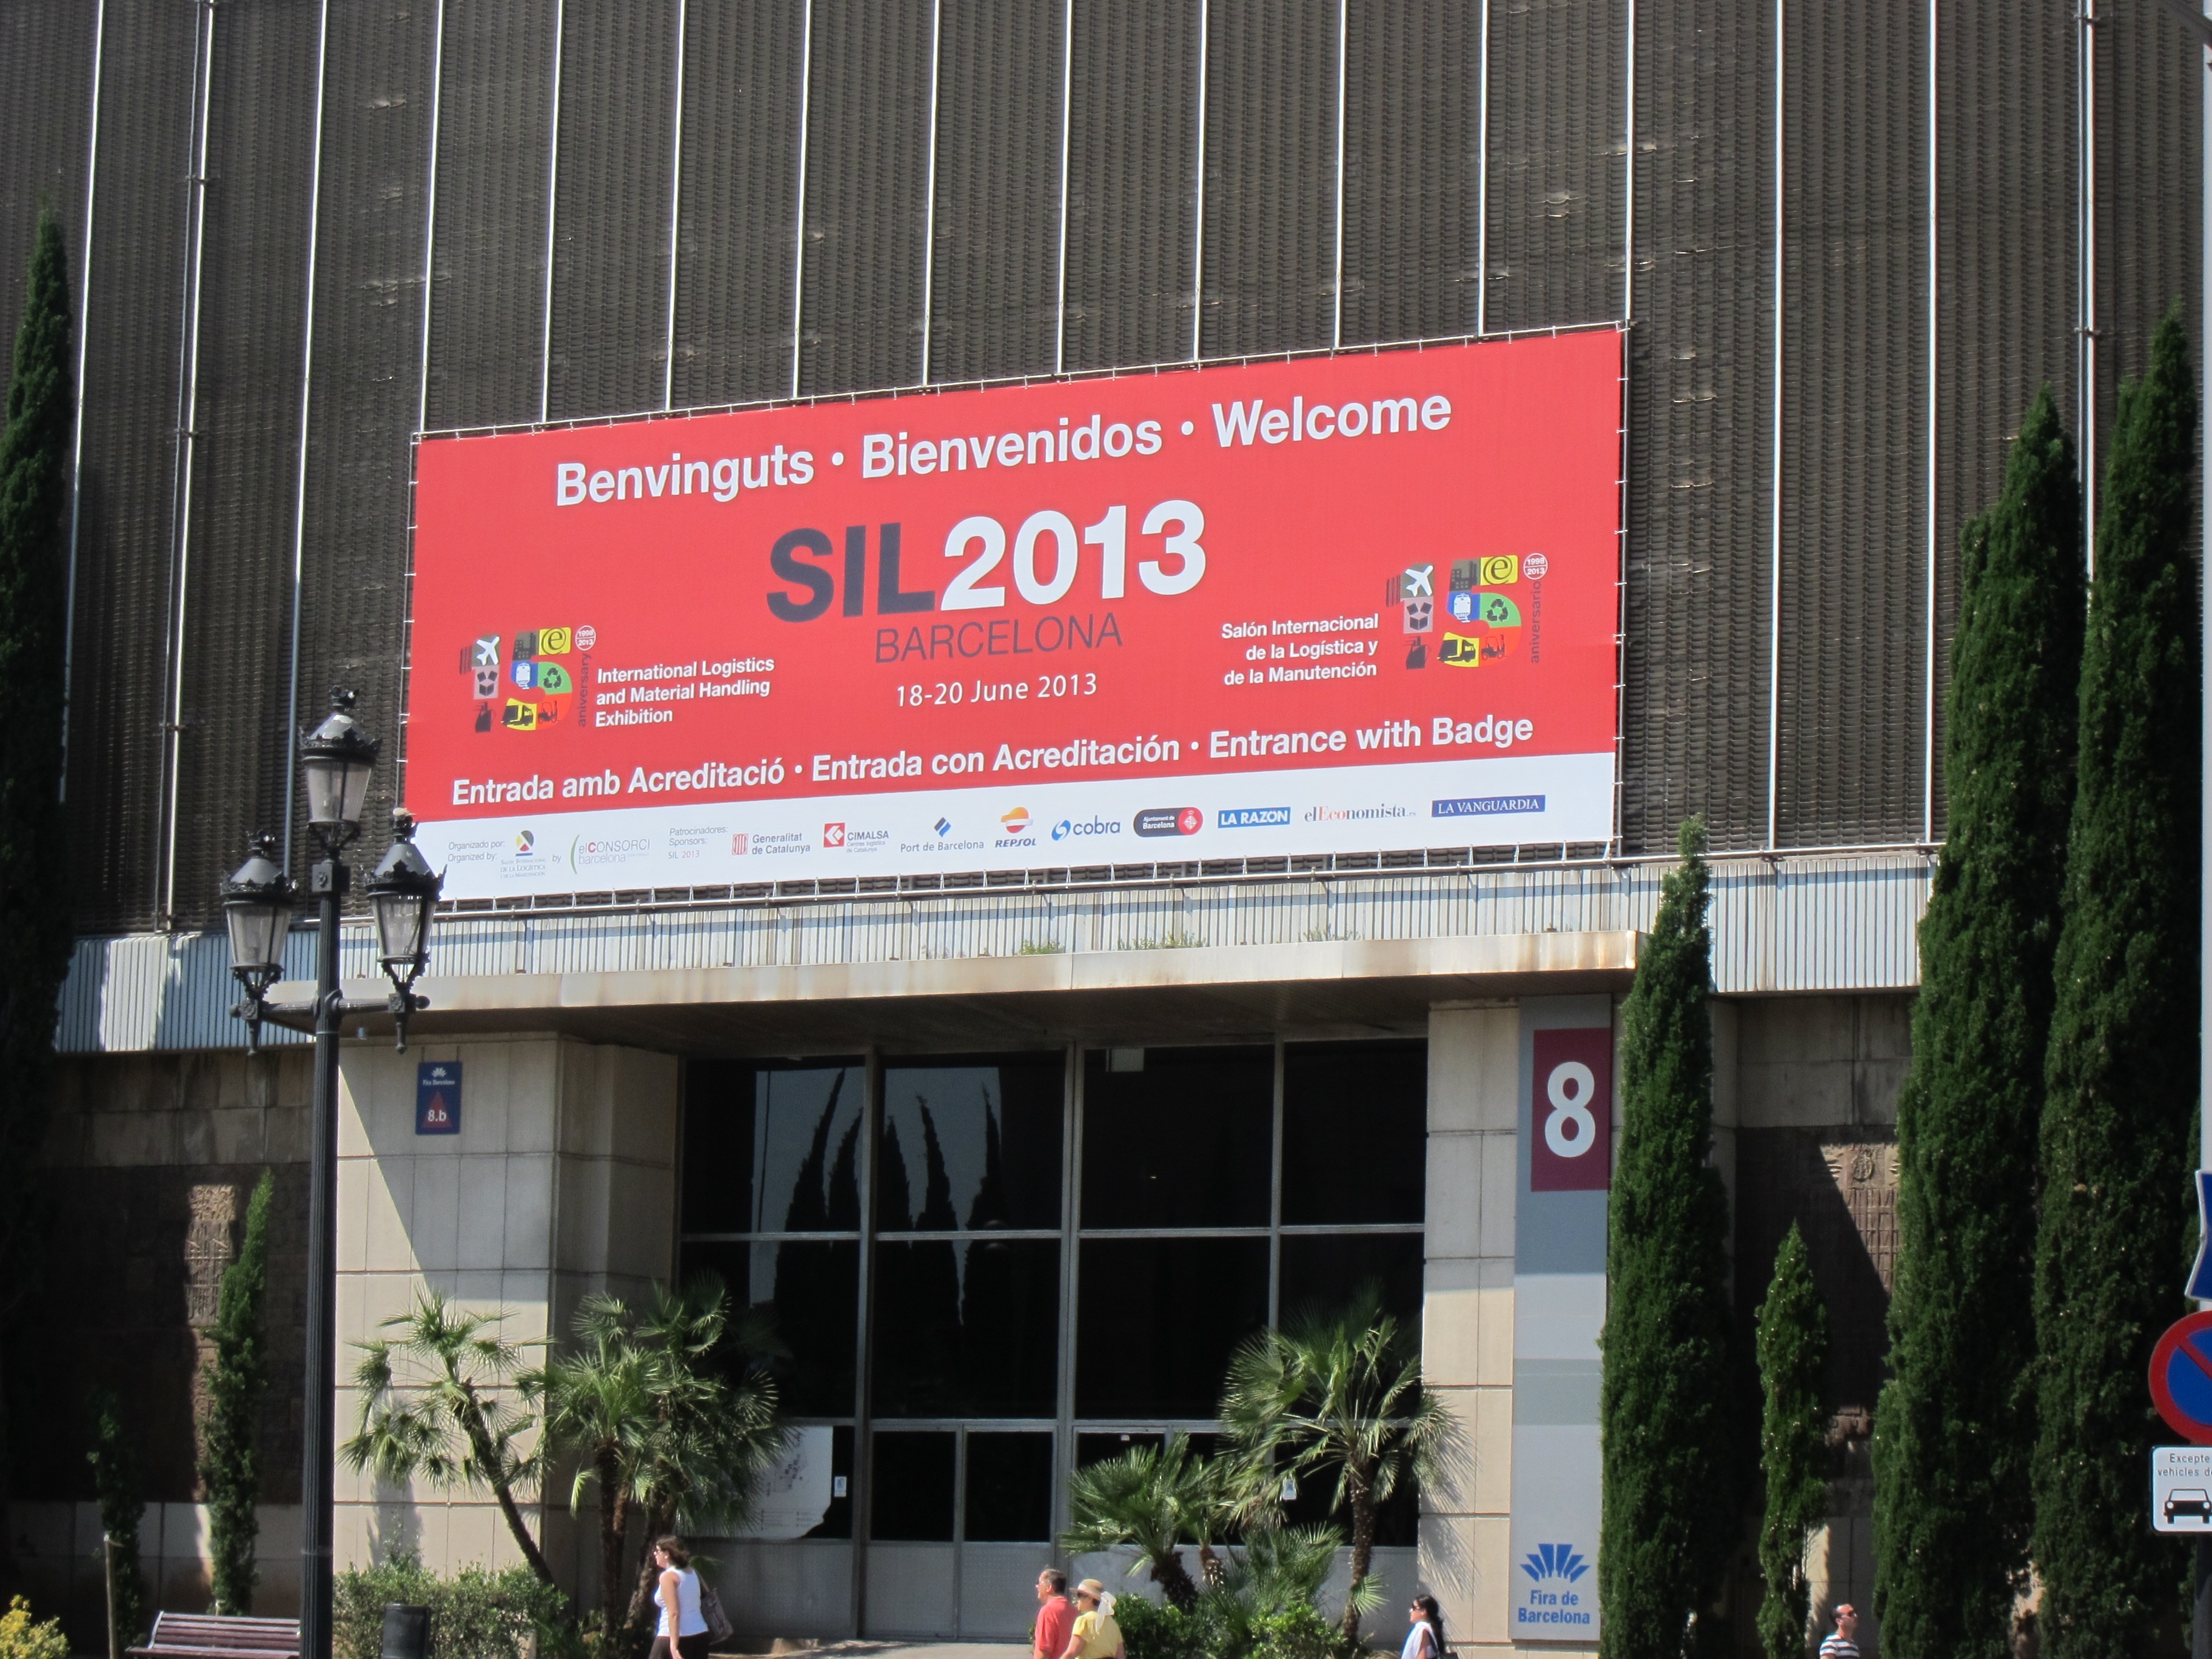 La ministra Pastor inaugura el SIL 2013 en Barcelona con Marruecos como país invitado